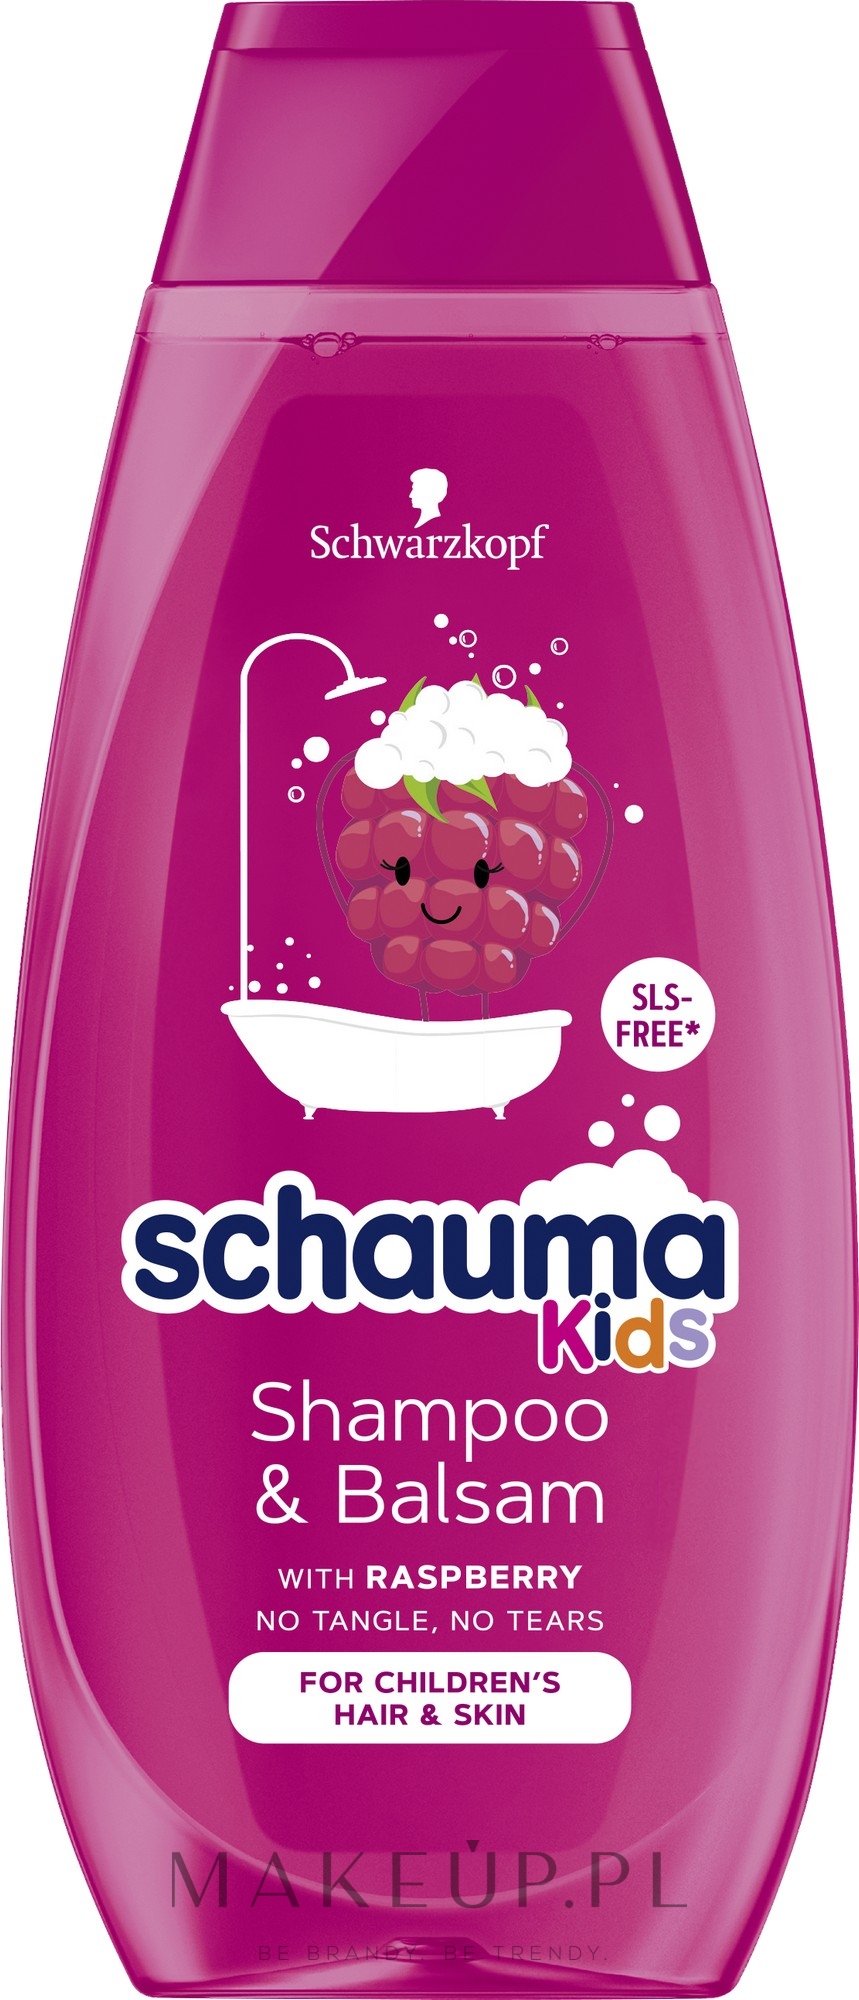 schauma kids szampon wizaz